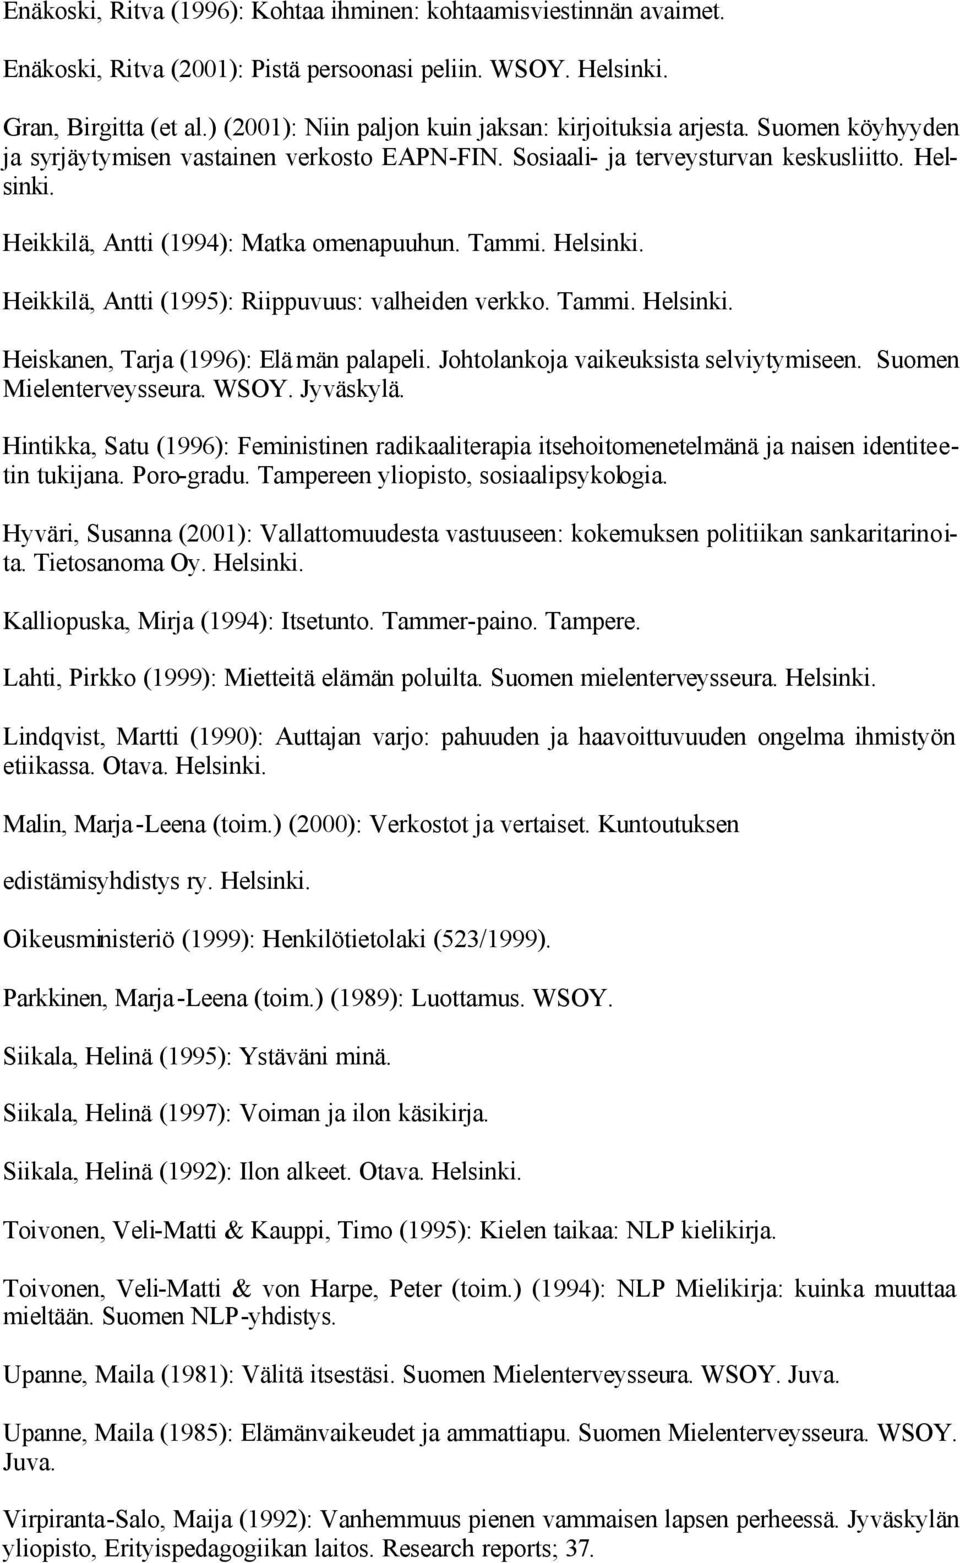 Heikkilä, Antti (1994): Matka omenapuuhun. Tammi. Heikkilä, Antti (1995): Riippuvuus: valheiden verkko. Tammi. Heiskanen, Tarja (1996): Elämän palapeli. Johtolankoja vaikeuksista selviytymiseen.